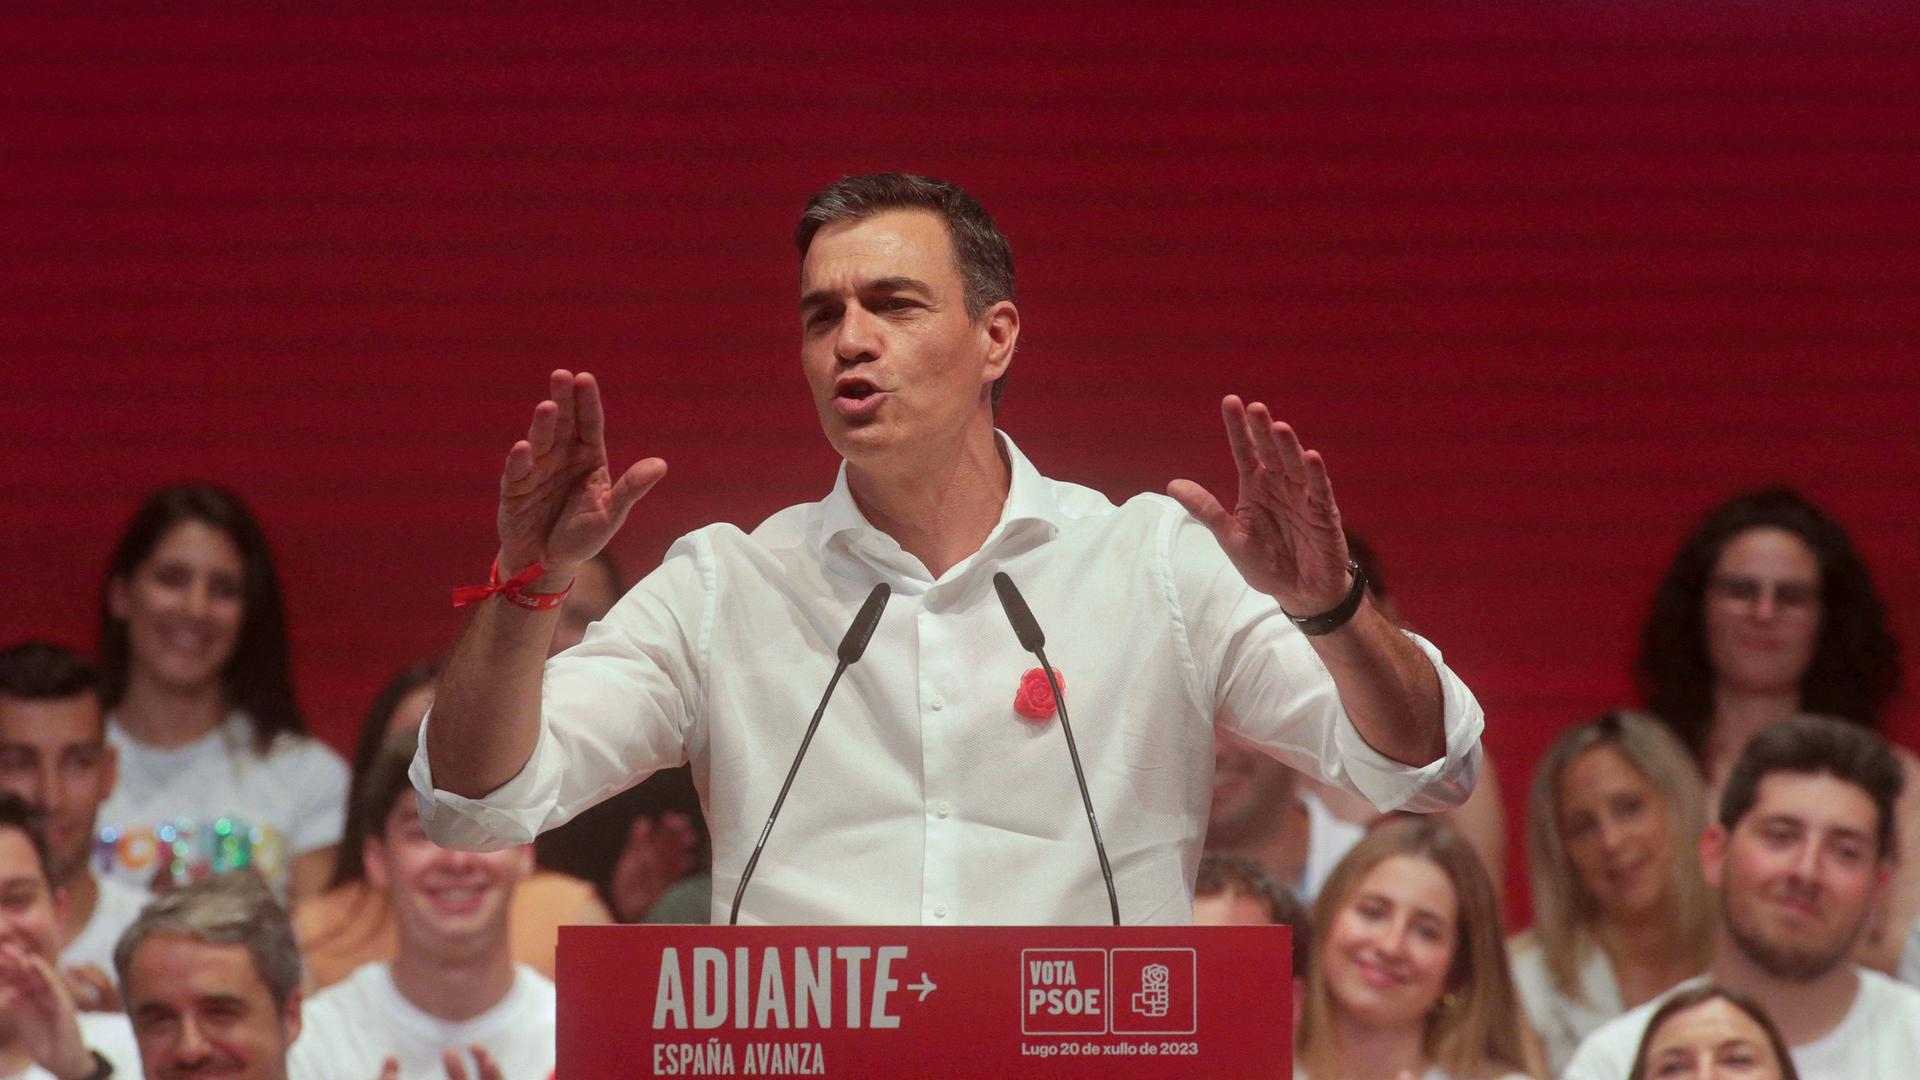 Pedro Sanchez steht bei einer Wahlkampfveranstaltung gestikulierend an einem Pult mit Mikrofonen.